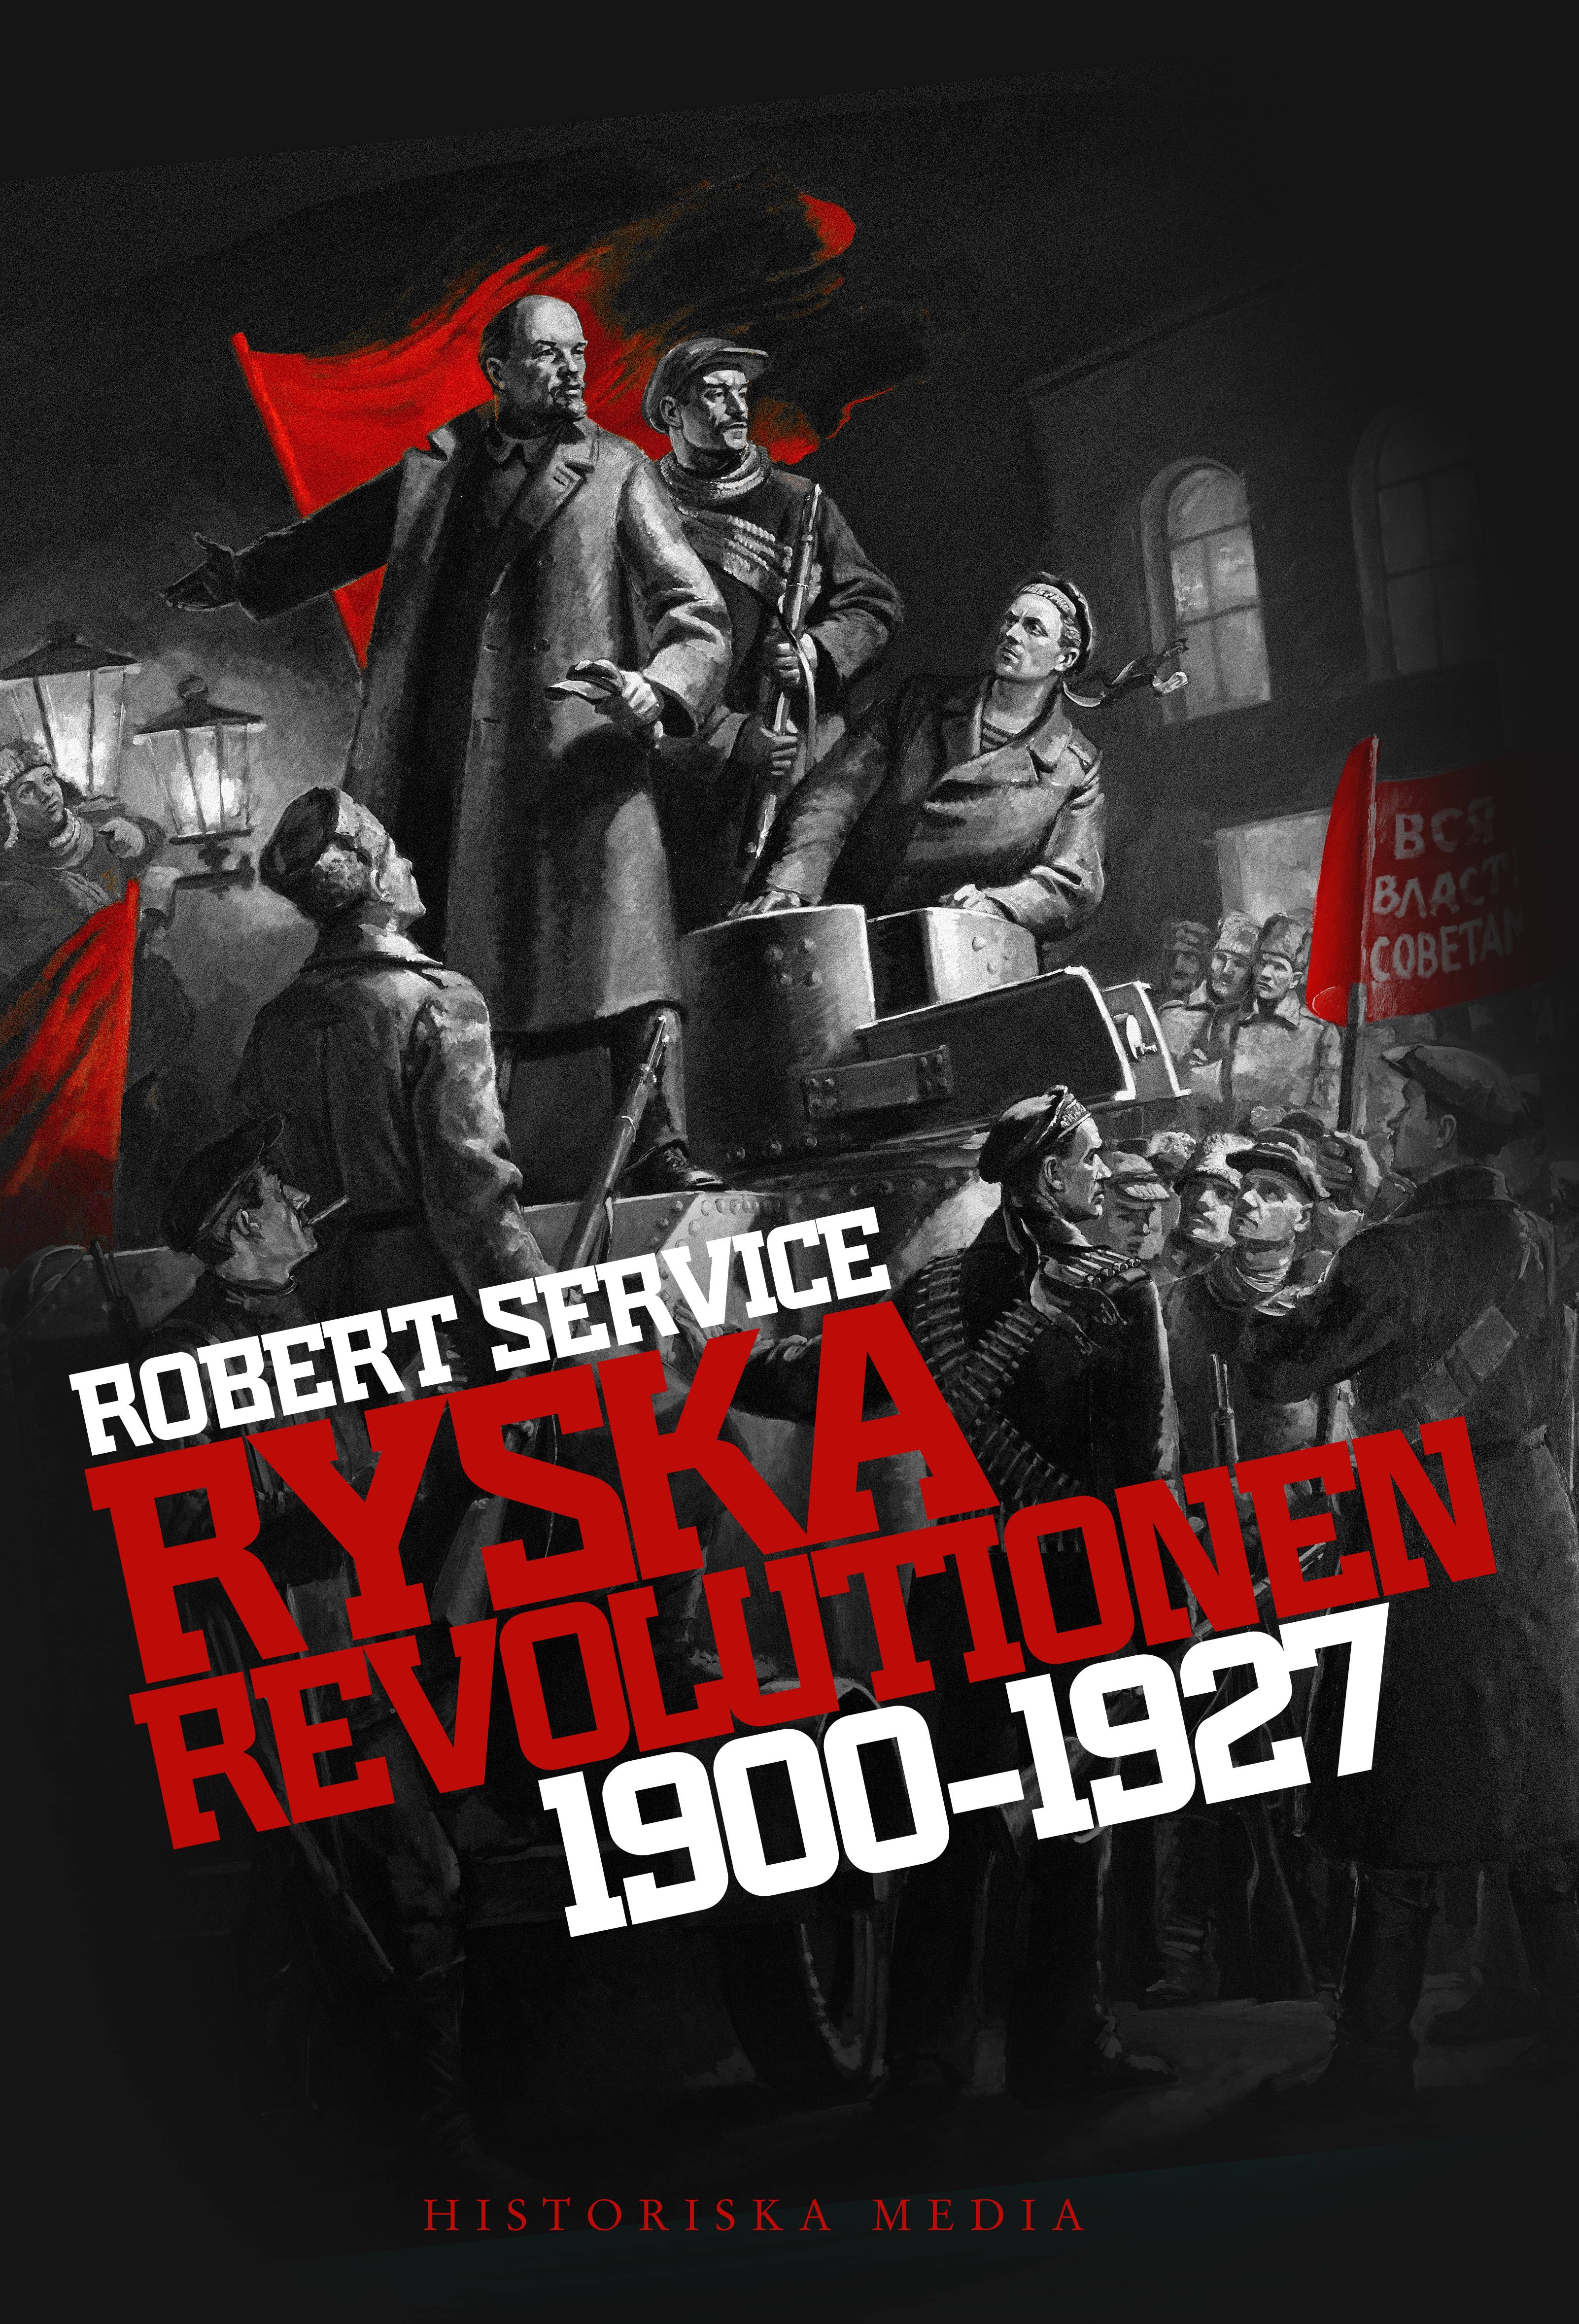 Ryska revolutionen 1900-1927